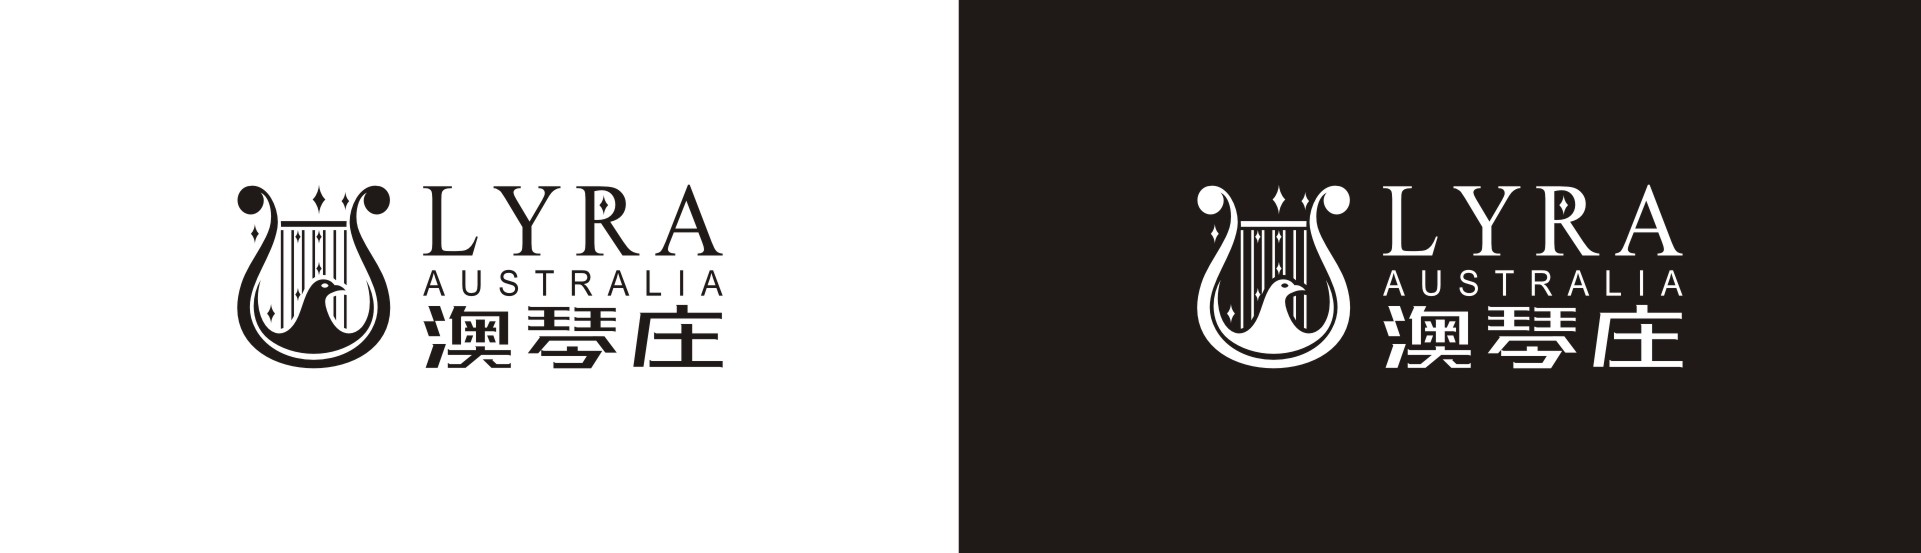 澳琴庄红酒logo设计,广告语设计,古一设计